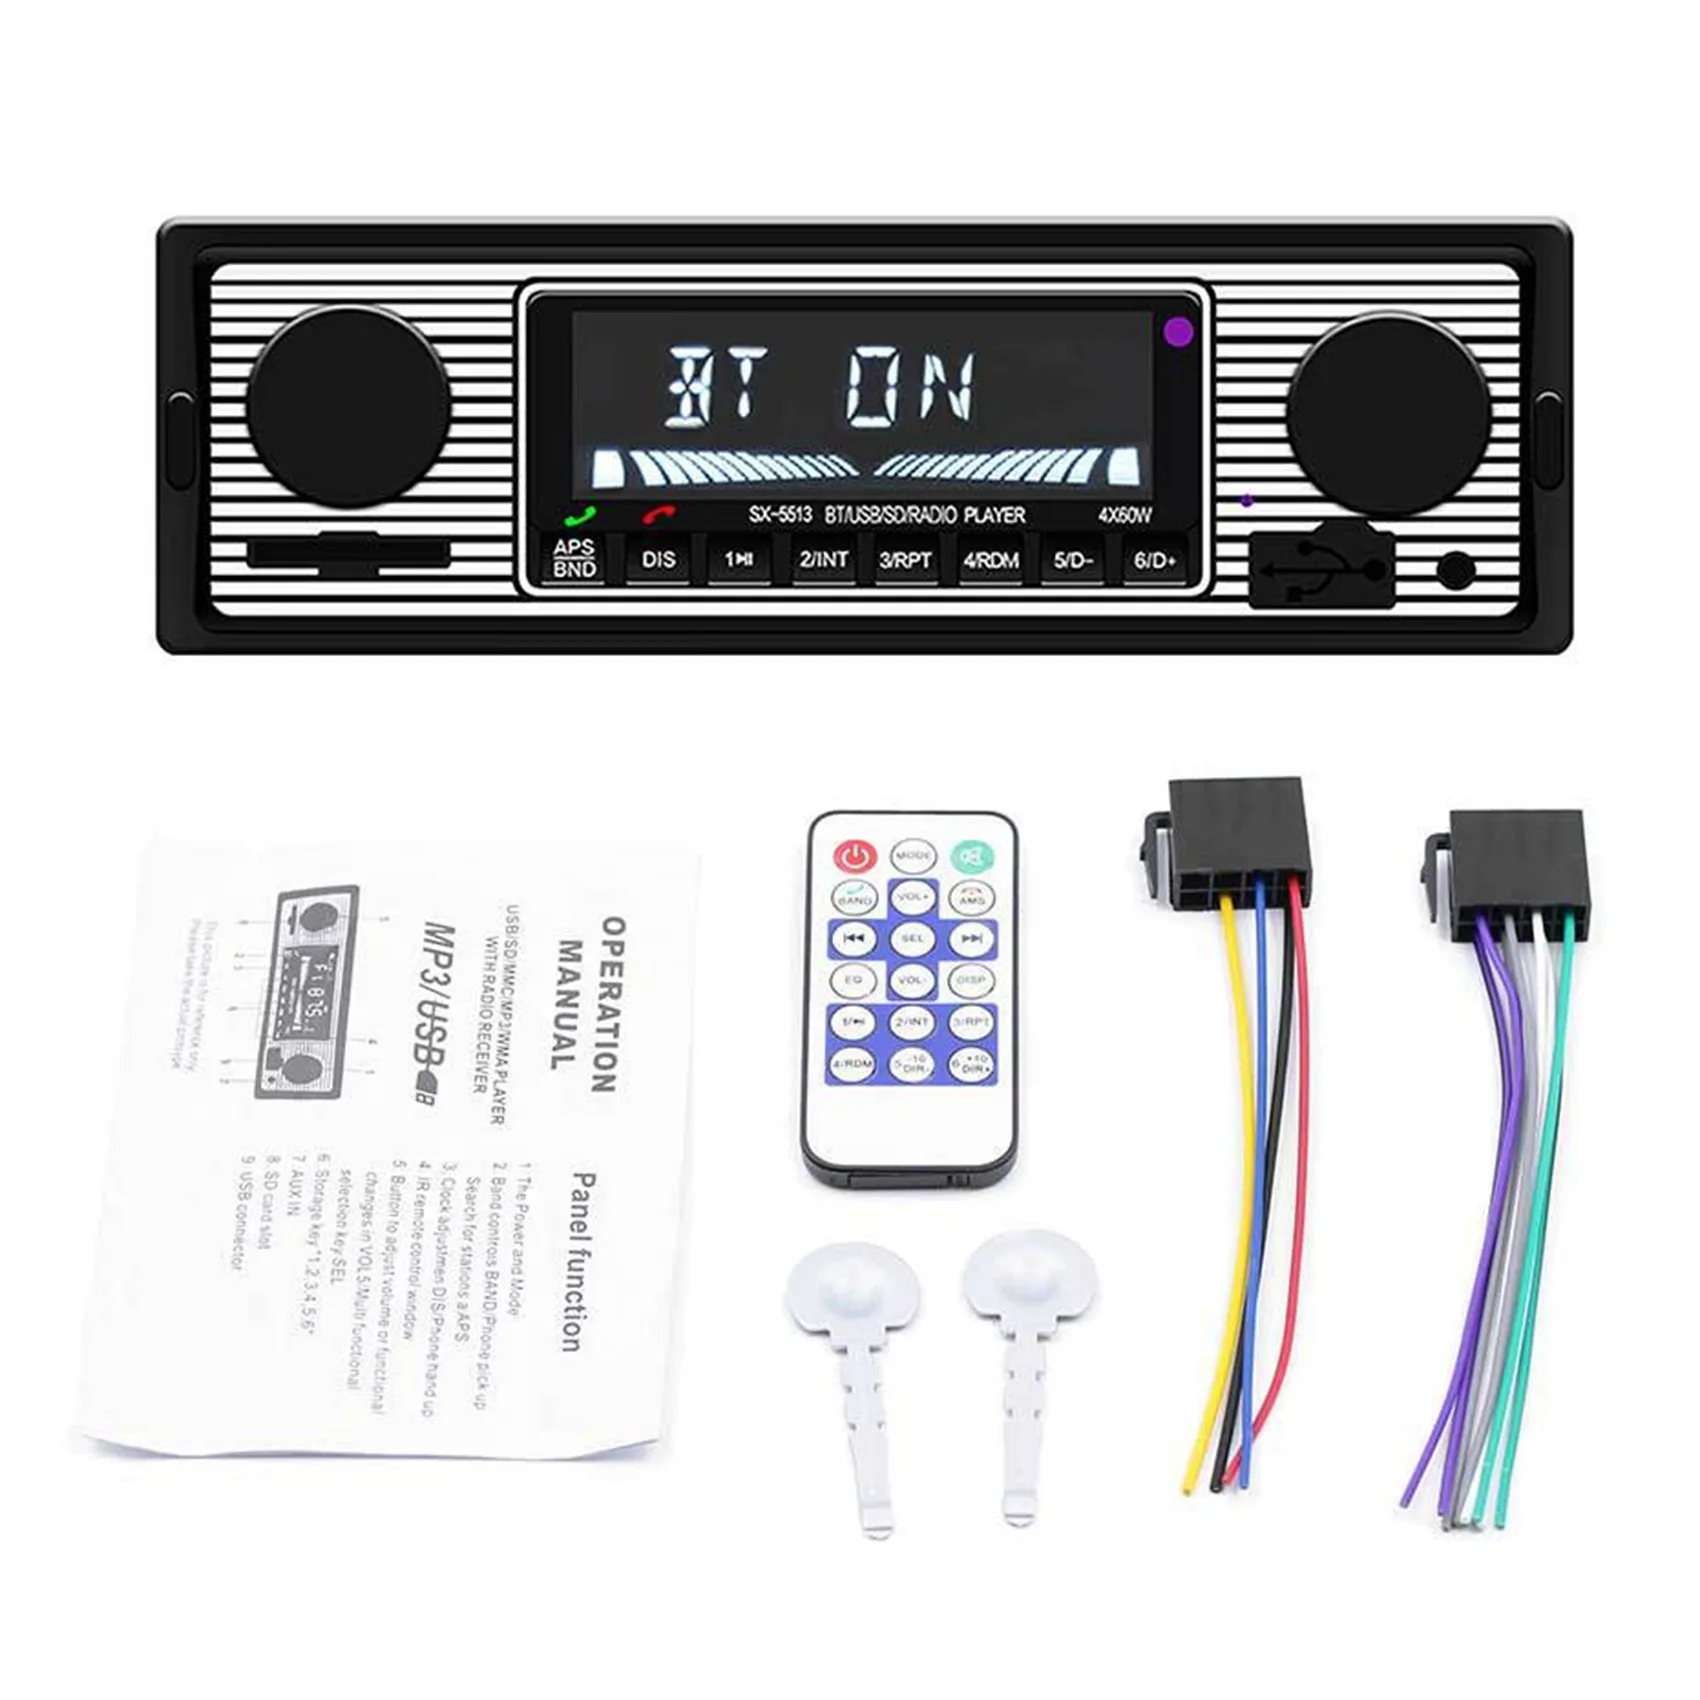 

Автомагнитола 1 DIN в стиле ретро, автомобильная аудиосистема Bluetooth с USB/SD/AUX картой, FM, mp3-плеером, ПК Тип:-5513